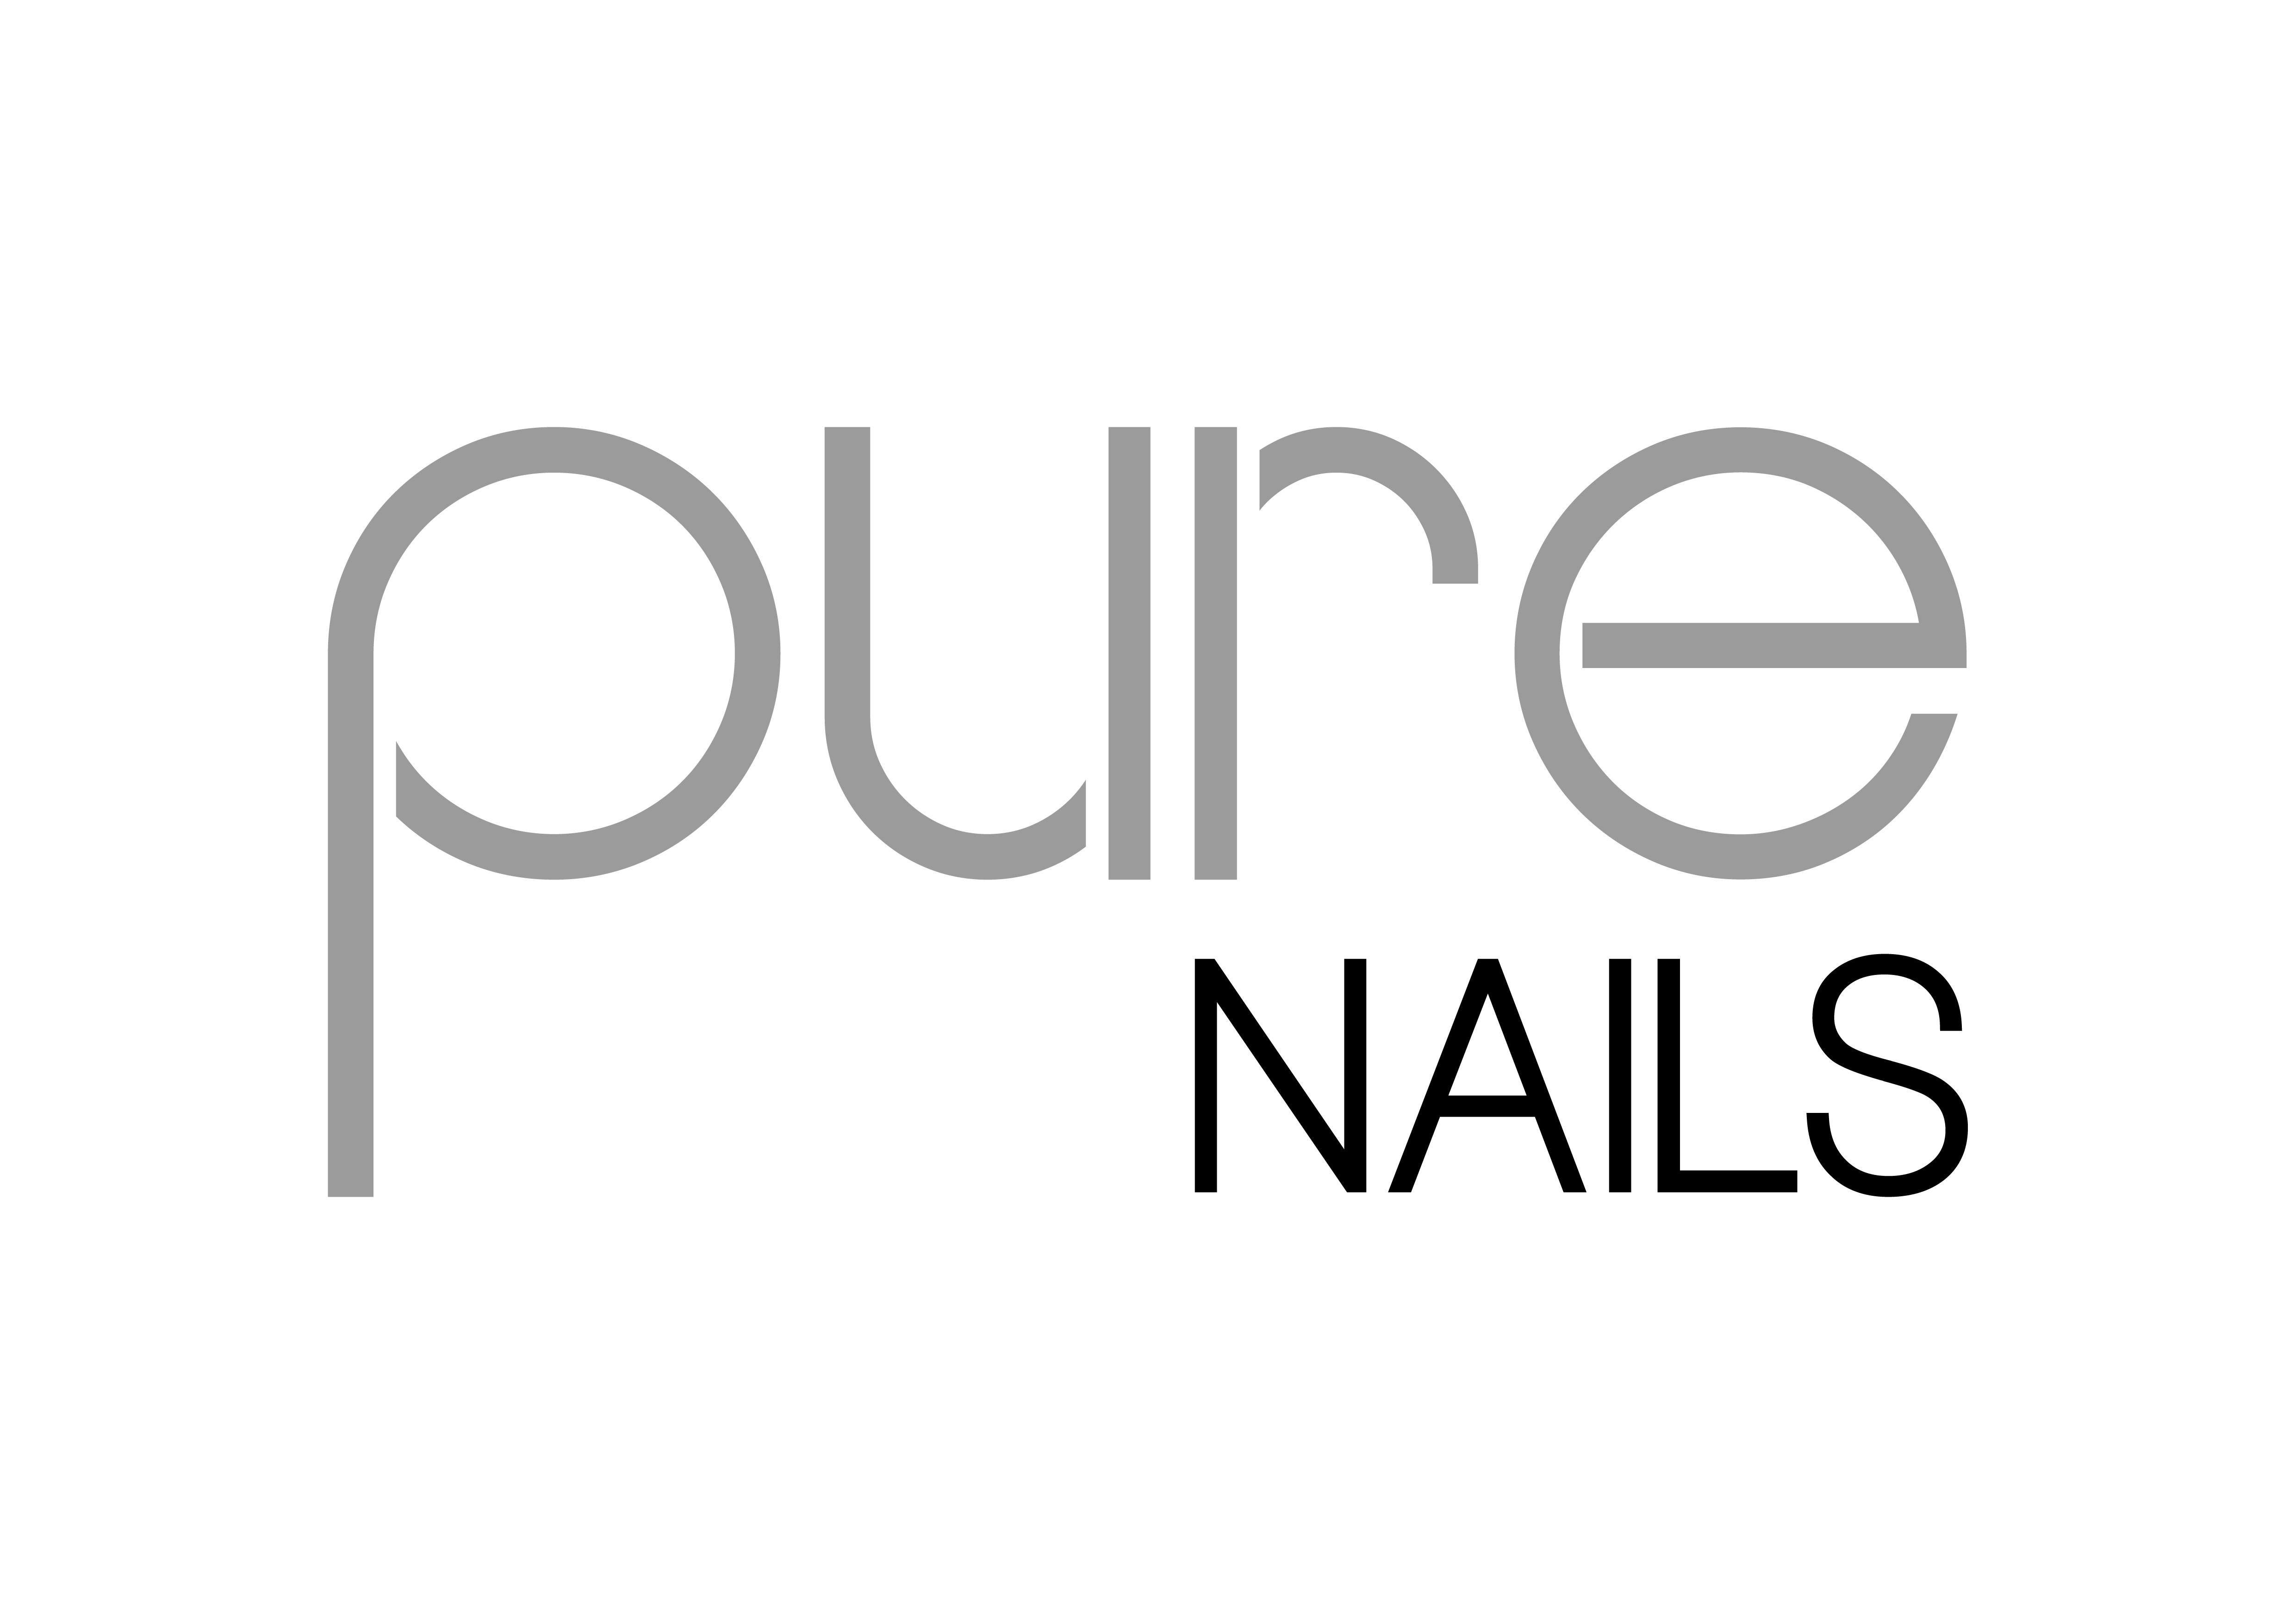 Pure Nails